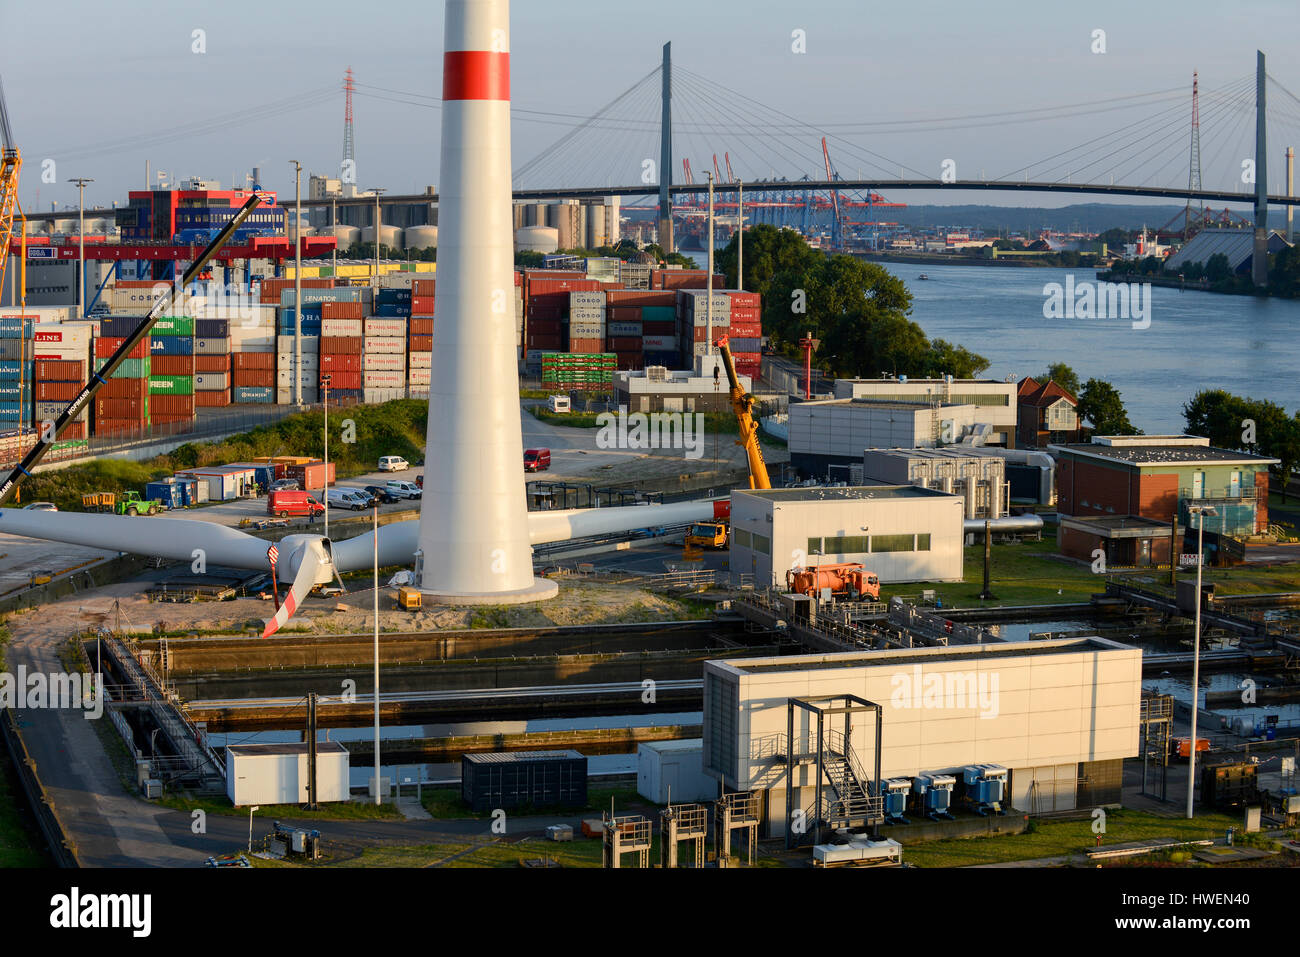 Alemania Hamburgo, construcción de nuevas turbinas eólicas Nordex en la planta de tratamiento de Hamburg Wasser, el proveedor local de agua, detrás y el río Elba Suederelbe Koehlbrandbruecke Foto de stock